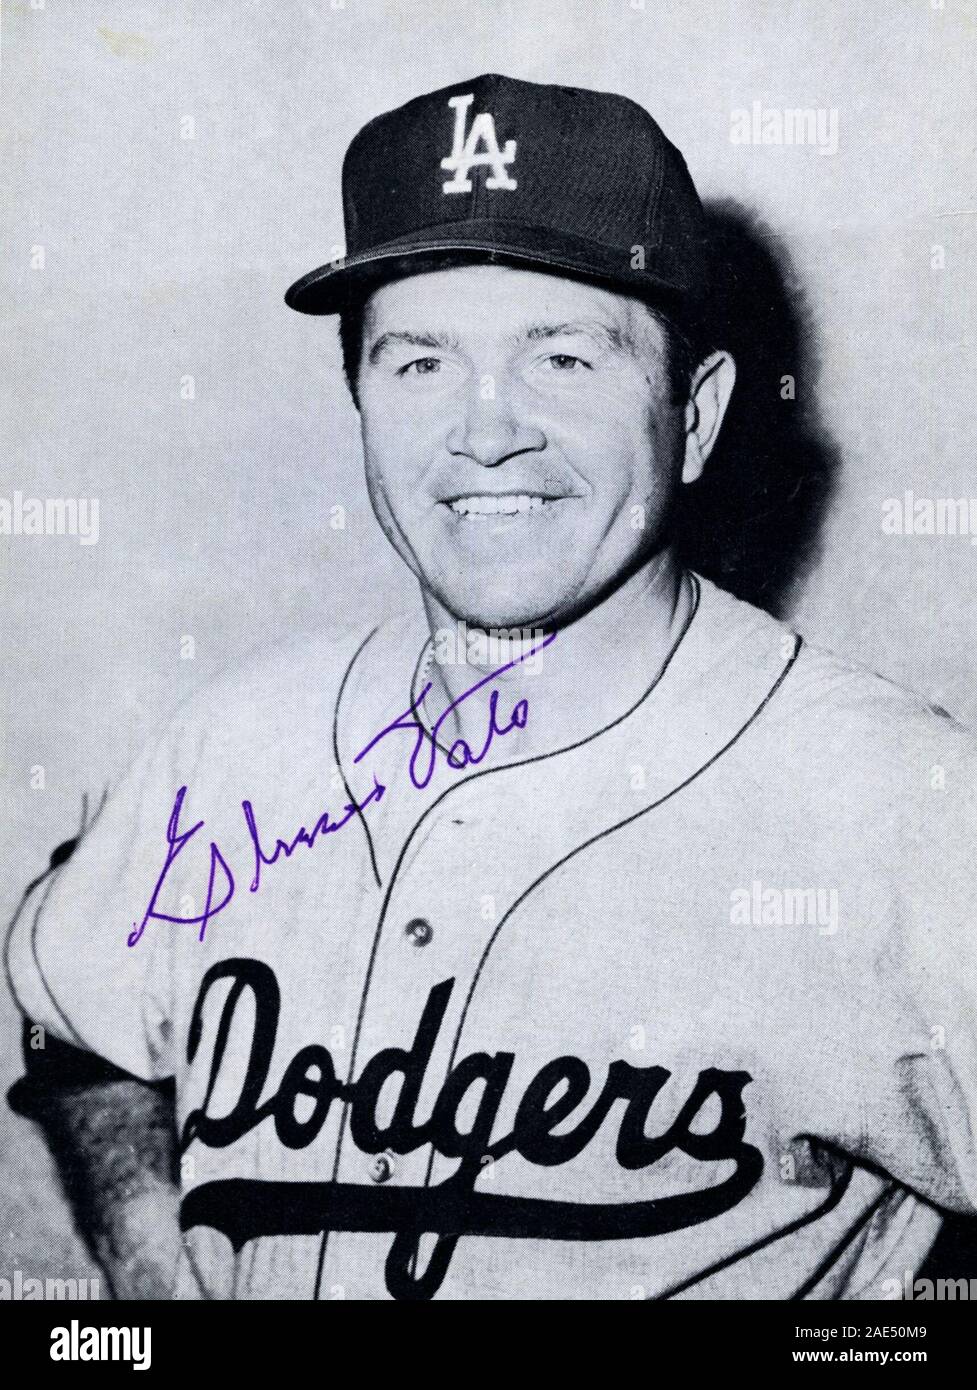 Noir et blanc autographiée photo souvenir de joueur des Dodgers de Los Angeles, valocirca 1958 Elmer. Banque D'Images